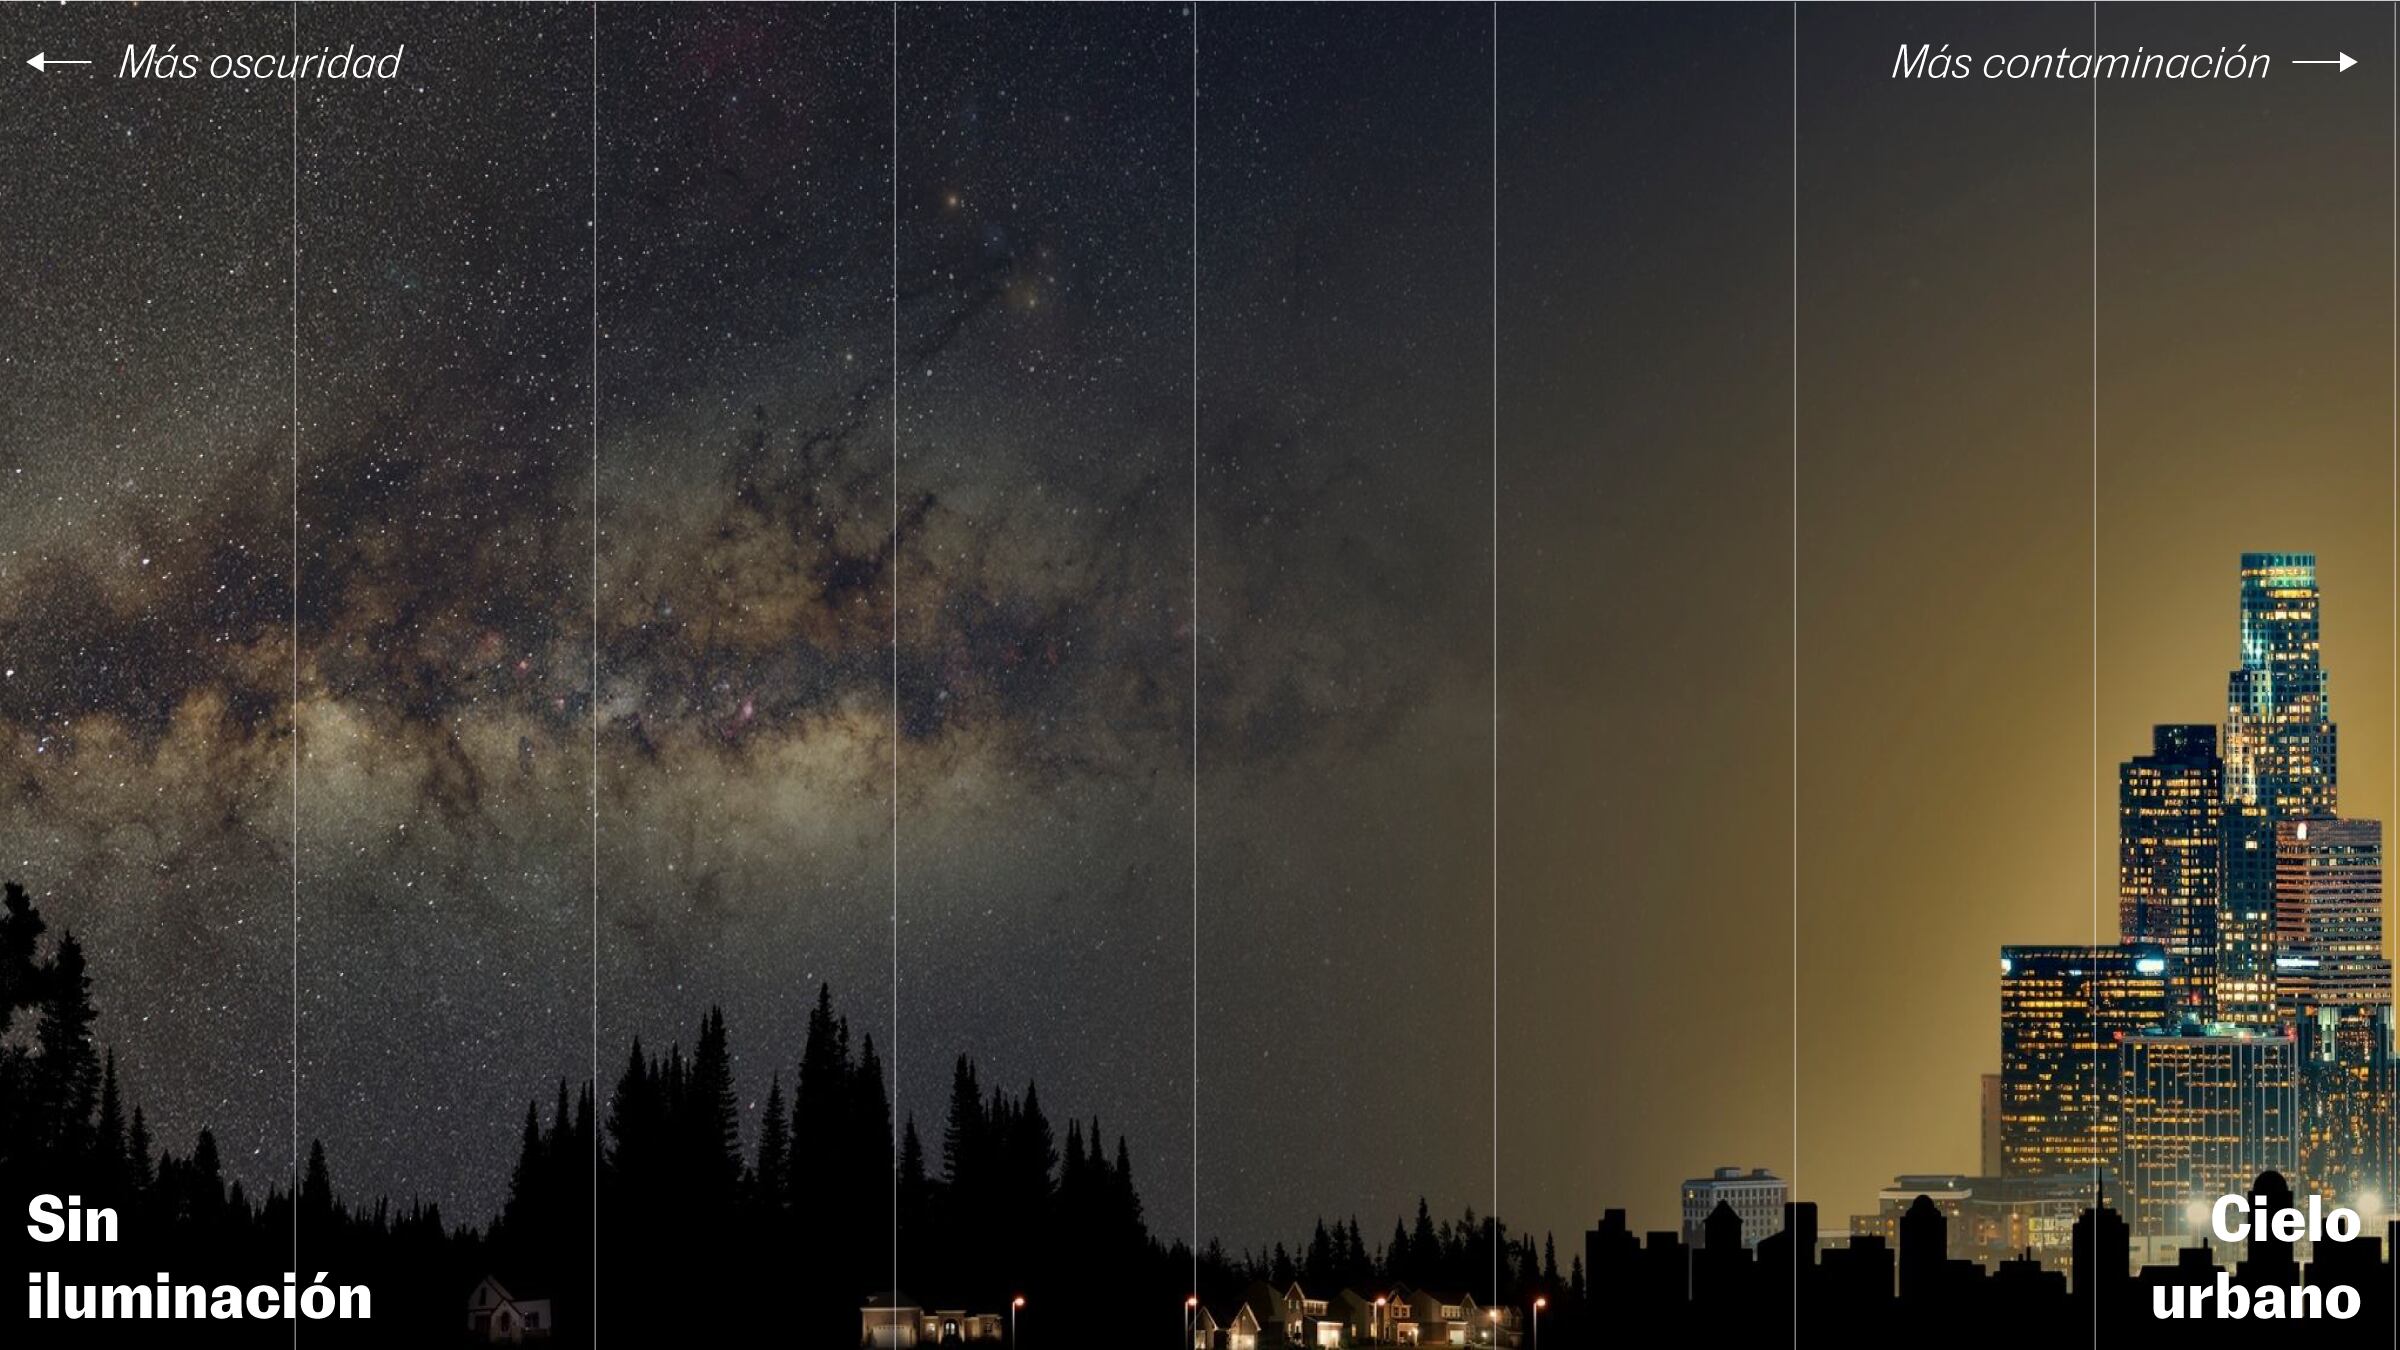 El brillo nocturno crece un 10% al año, la composición muestra el cielo en distintos entornos terrestres según la contaminación lumínica.